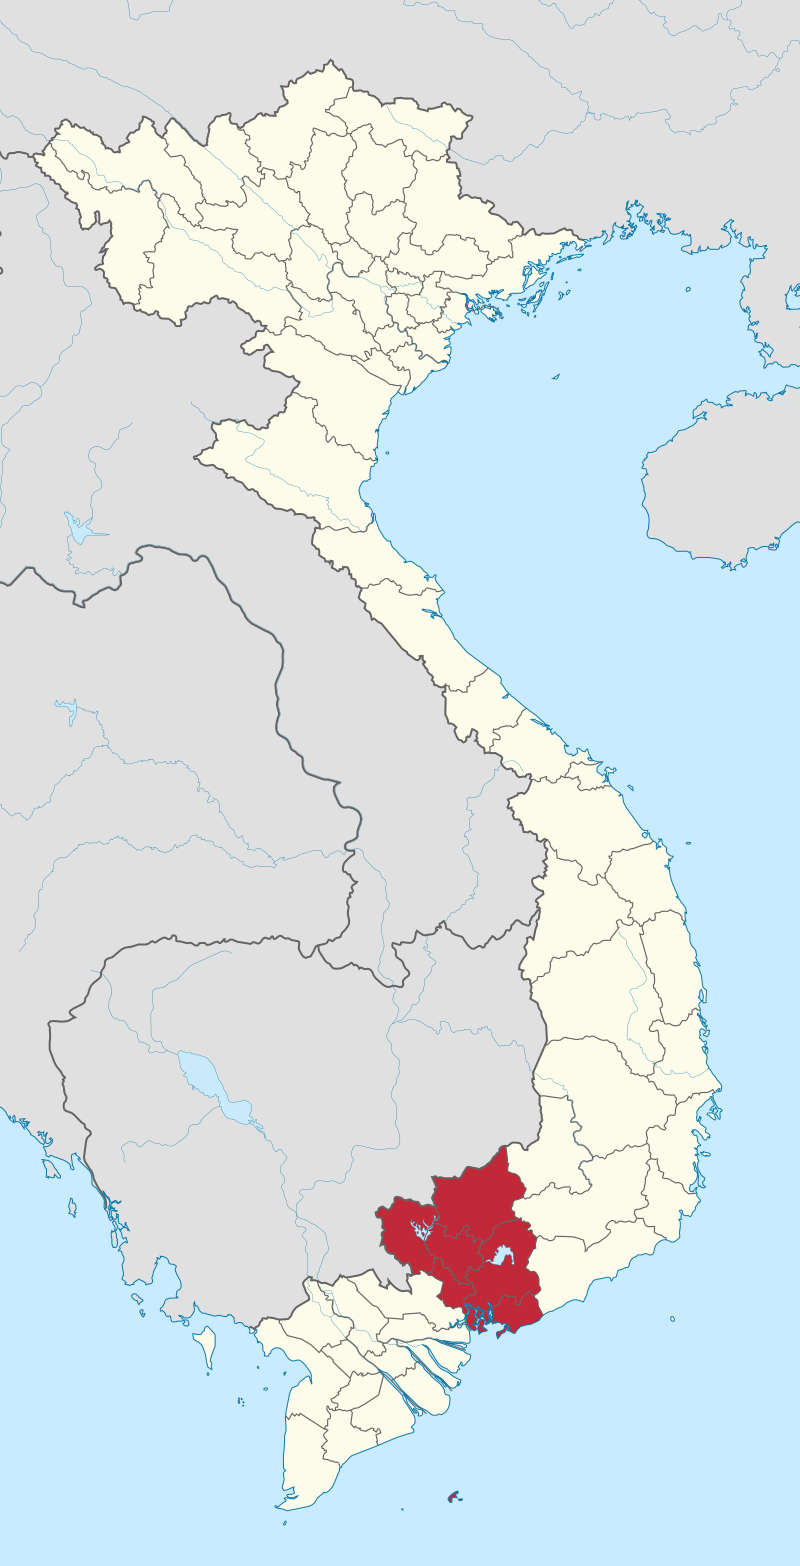 Đông Nam Bộ và Wikipedia tiếng Việt: Đông Nam Bộ là vùng đất phát triển với tốc độ nhanh chóng, là nơi gắn liền với câu chuyện về sự thăng tiến và phát triển của Việt Nam. Hãy cùng xem hình ảnh về những điểm đến nổi tiếng và độc đáo nhất của vùng đất này, cùng với sự đóng góp của Wikipedia tiếng Việt cho việc giới thiệu vùng đất này đến với thế giới.